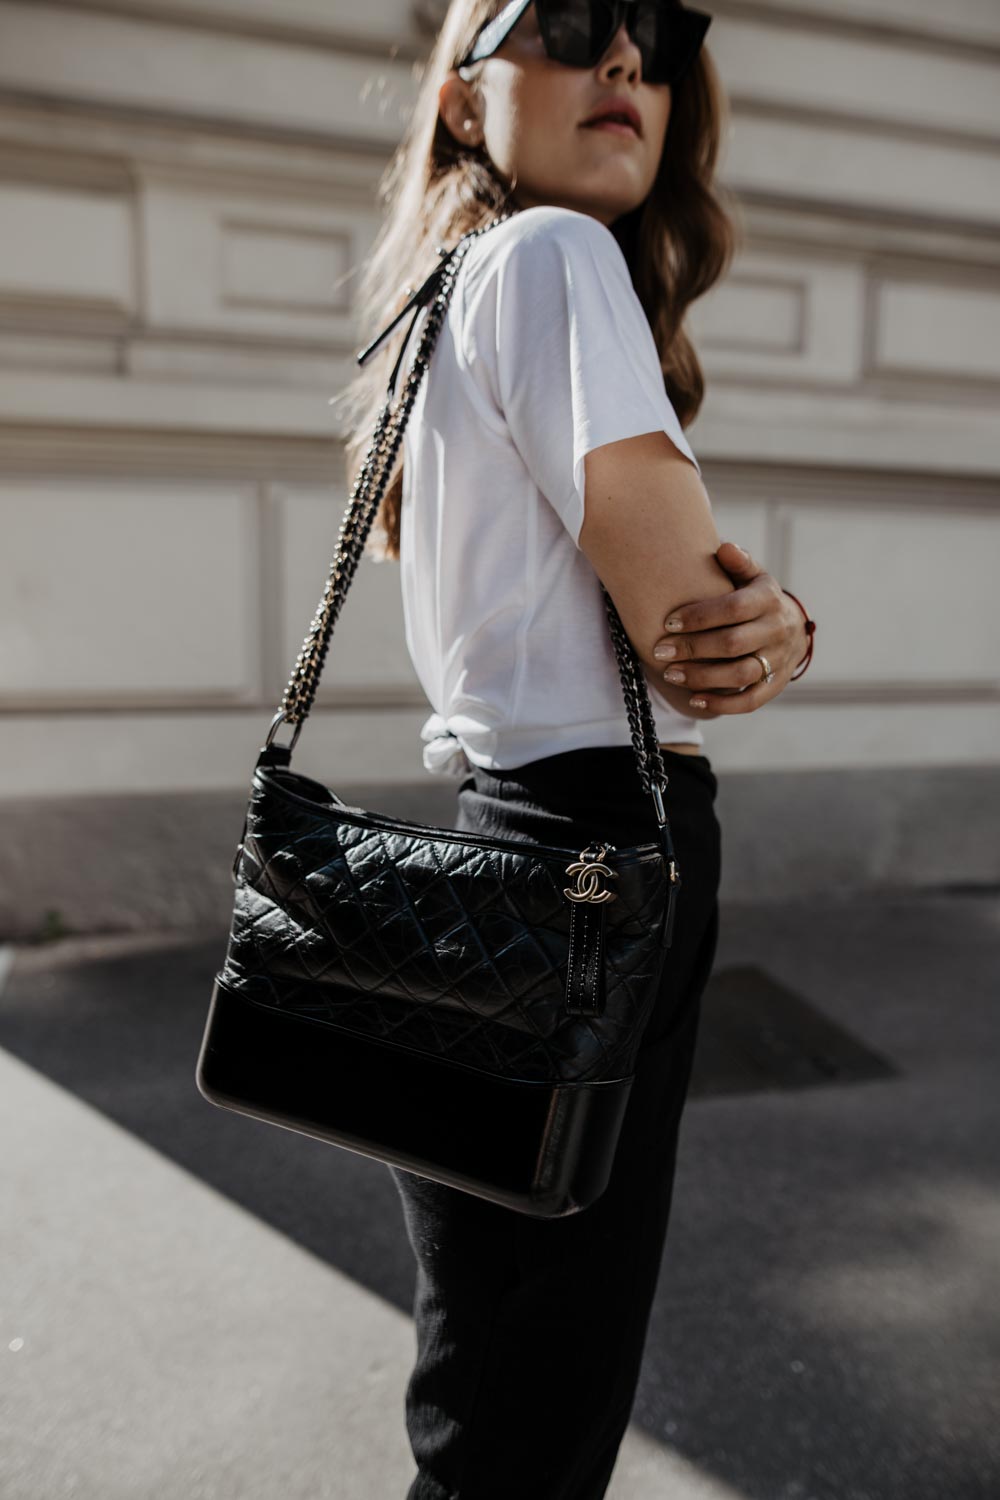 Chanel Pre-owned Gabrielle Shoulder Bag